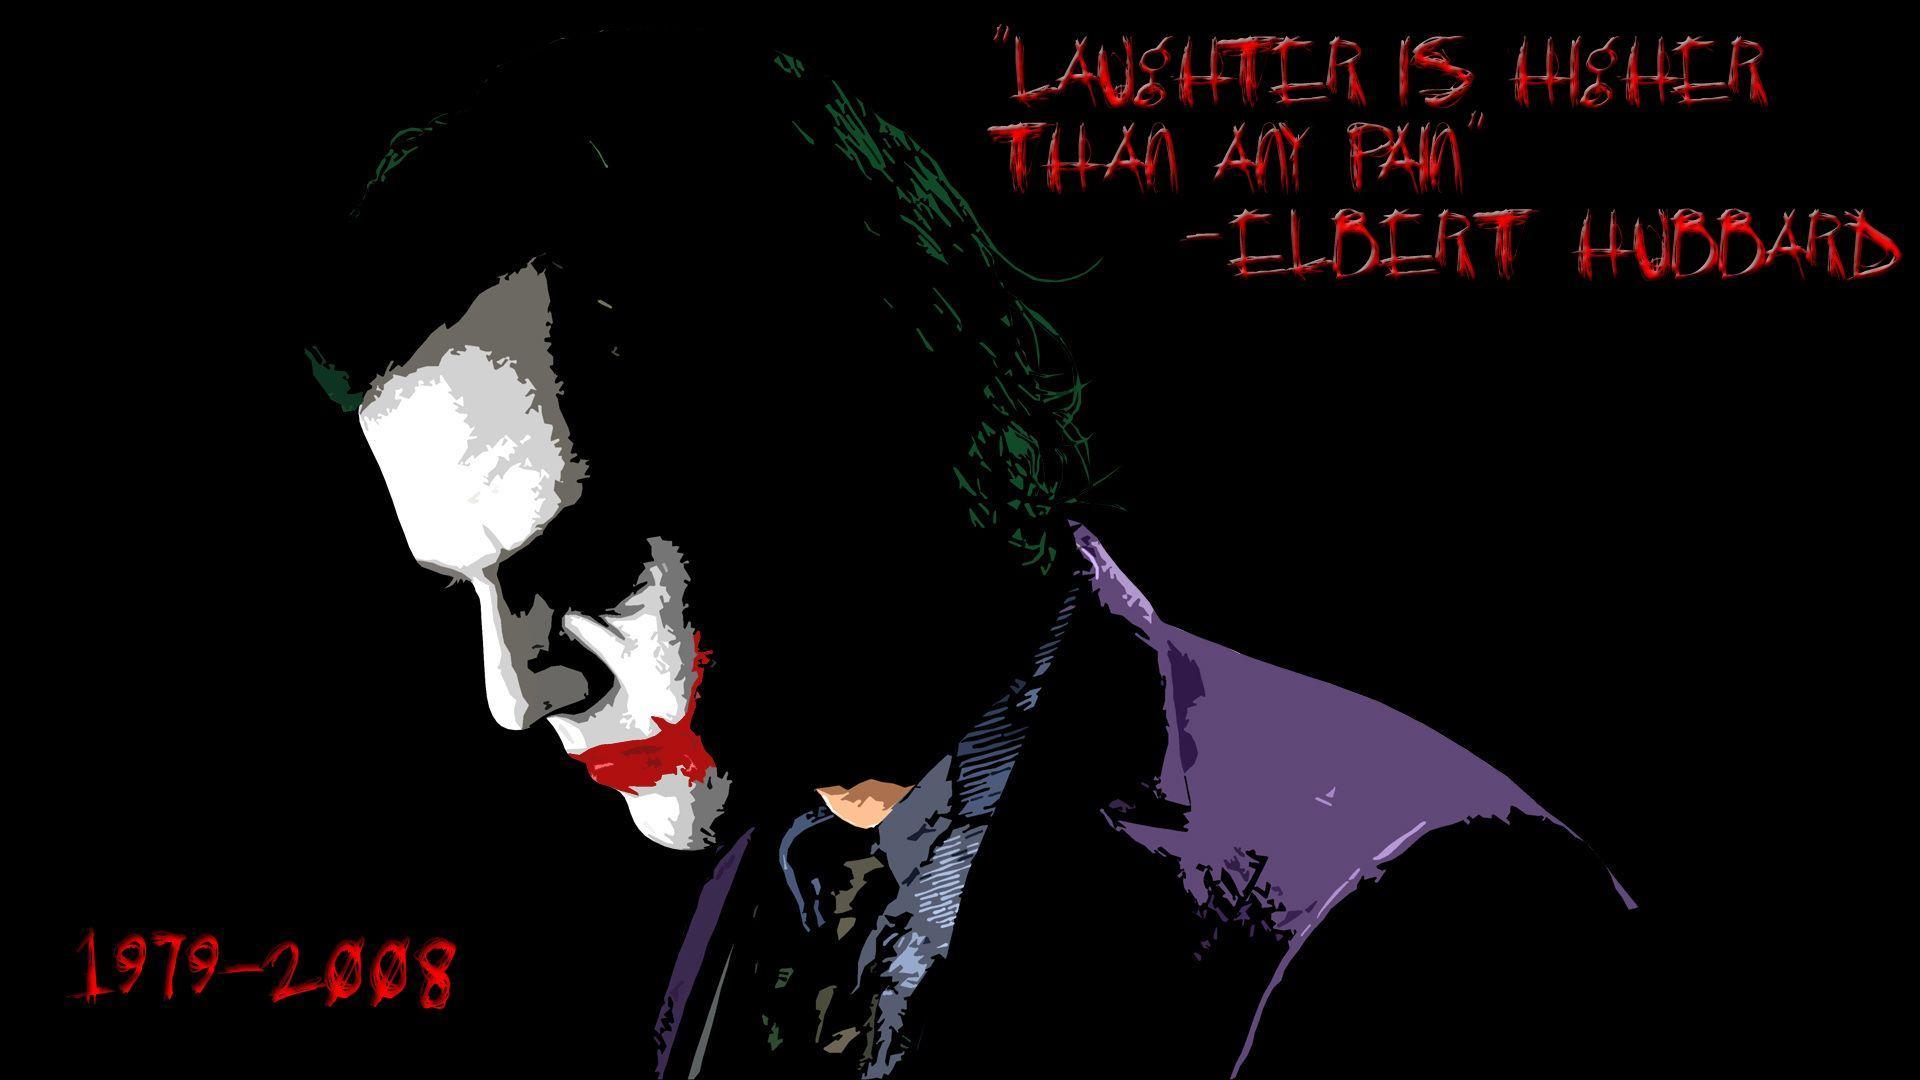 Joker Quotes Wallpapers - Wallpaper Cave